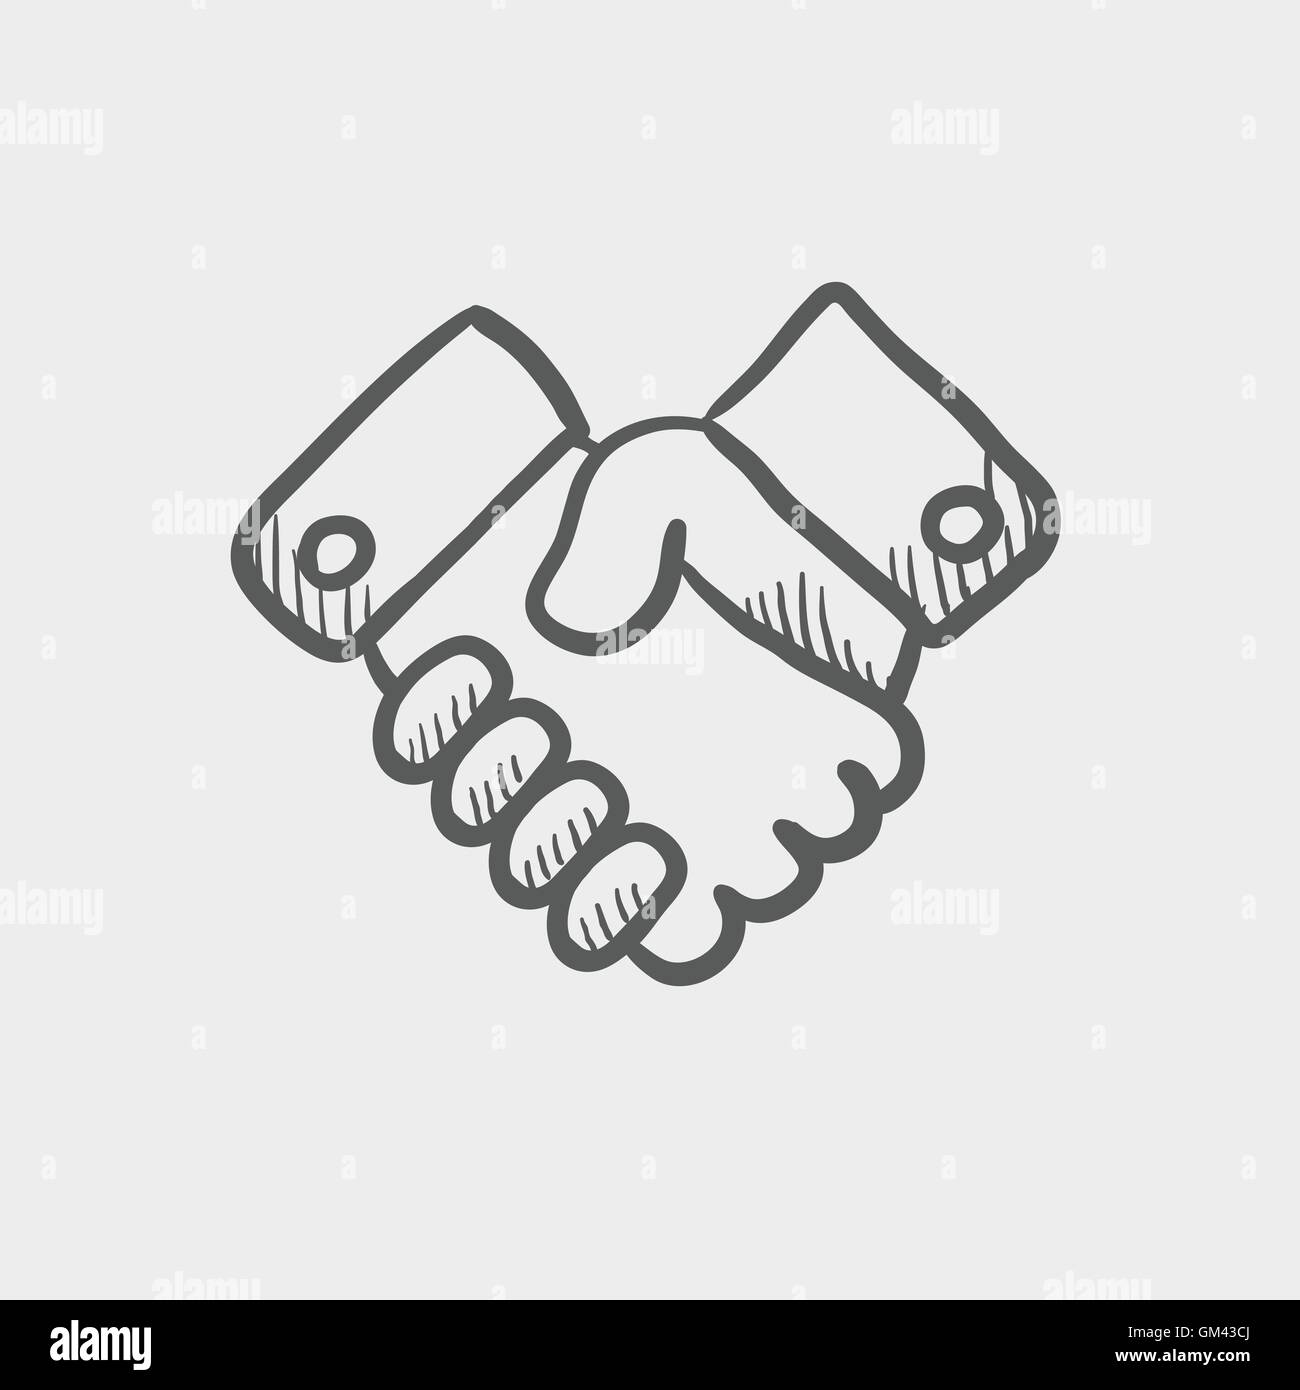 Handshake sketch icon Stock Vector